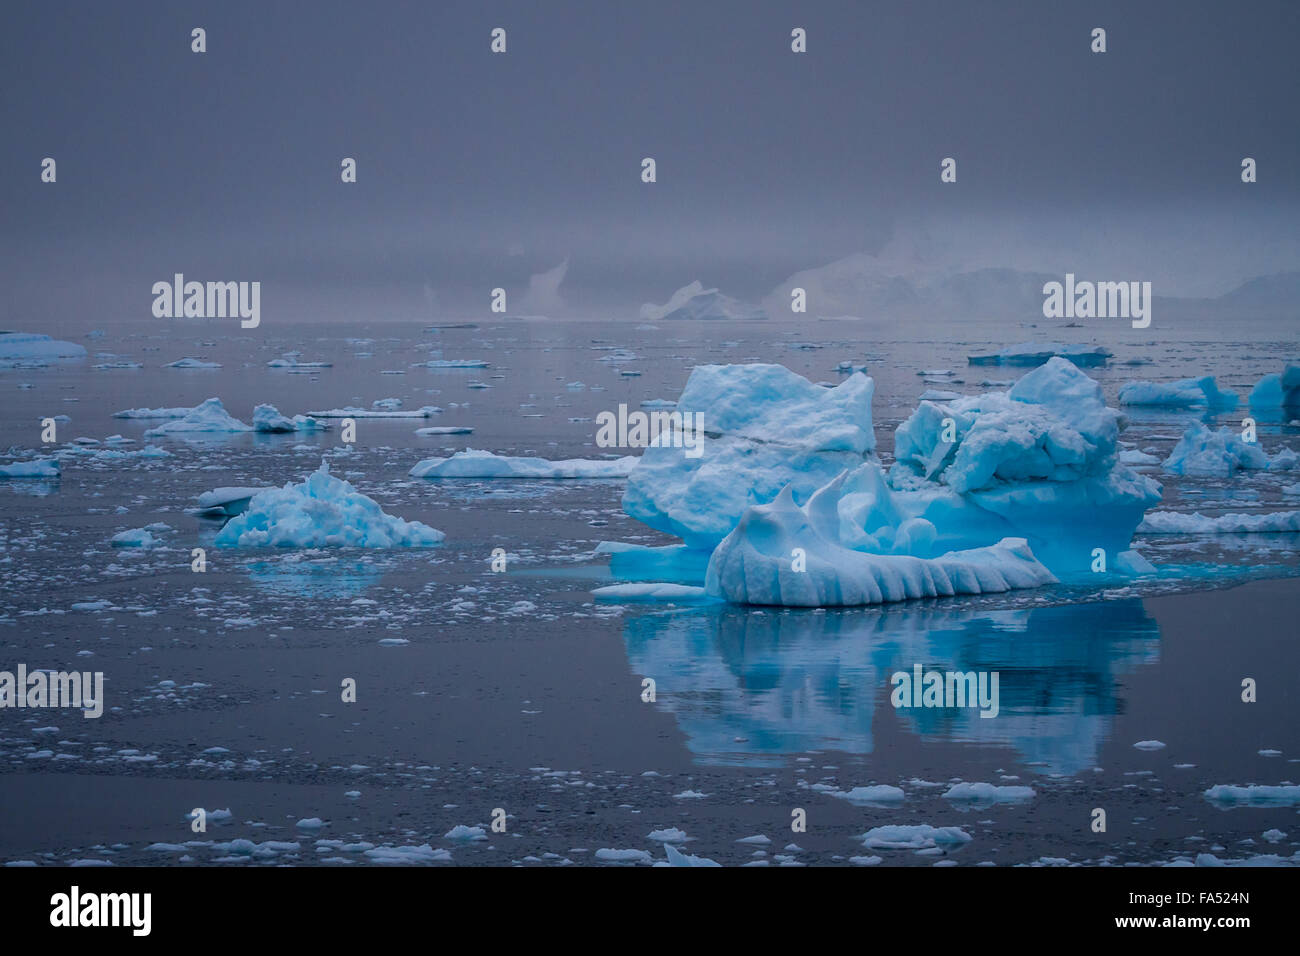 Beau et bien fait sur les icebergs un calme océan Antarctique, compensation de façon percutante contre l'moody sky, l'Antarctique. Banque D'Images